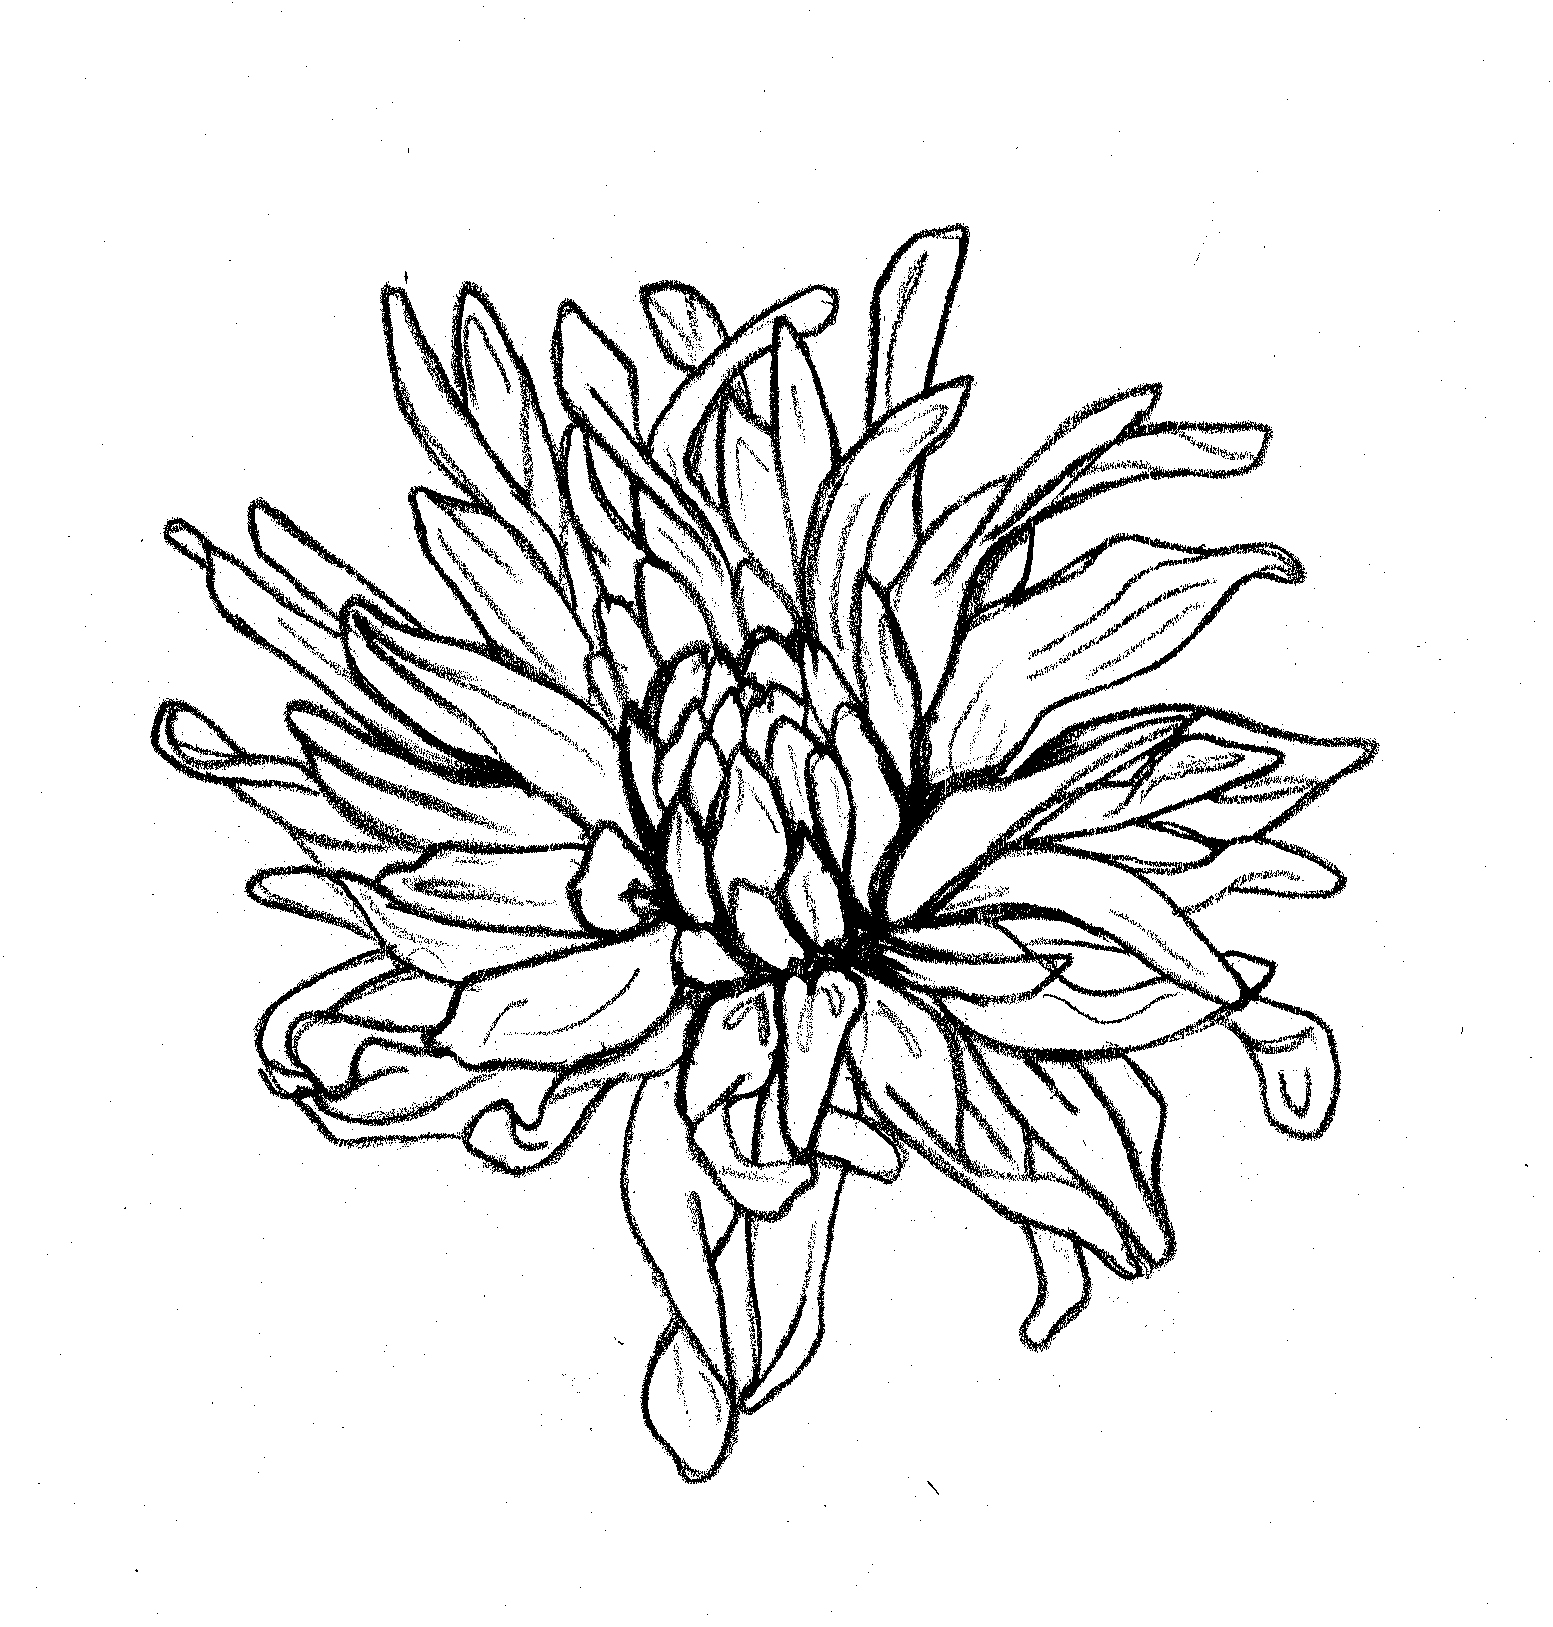 chrysanthemumdrawing.jpg